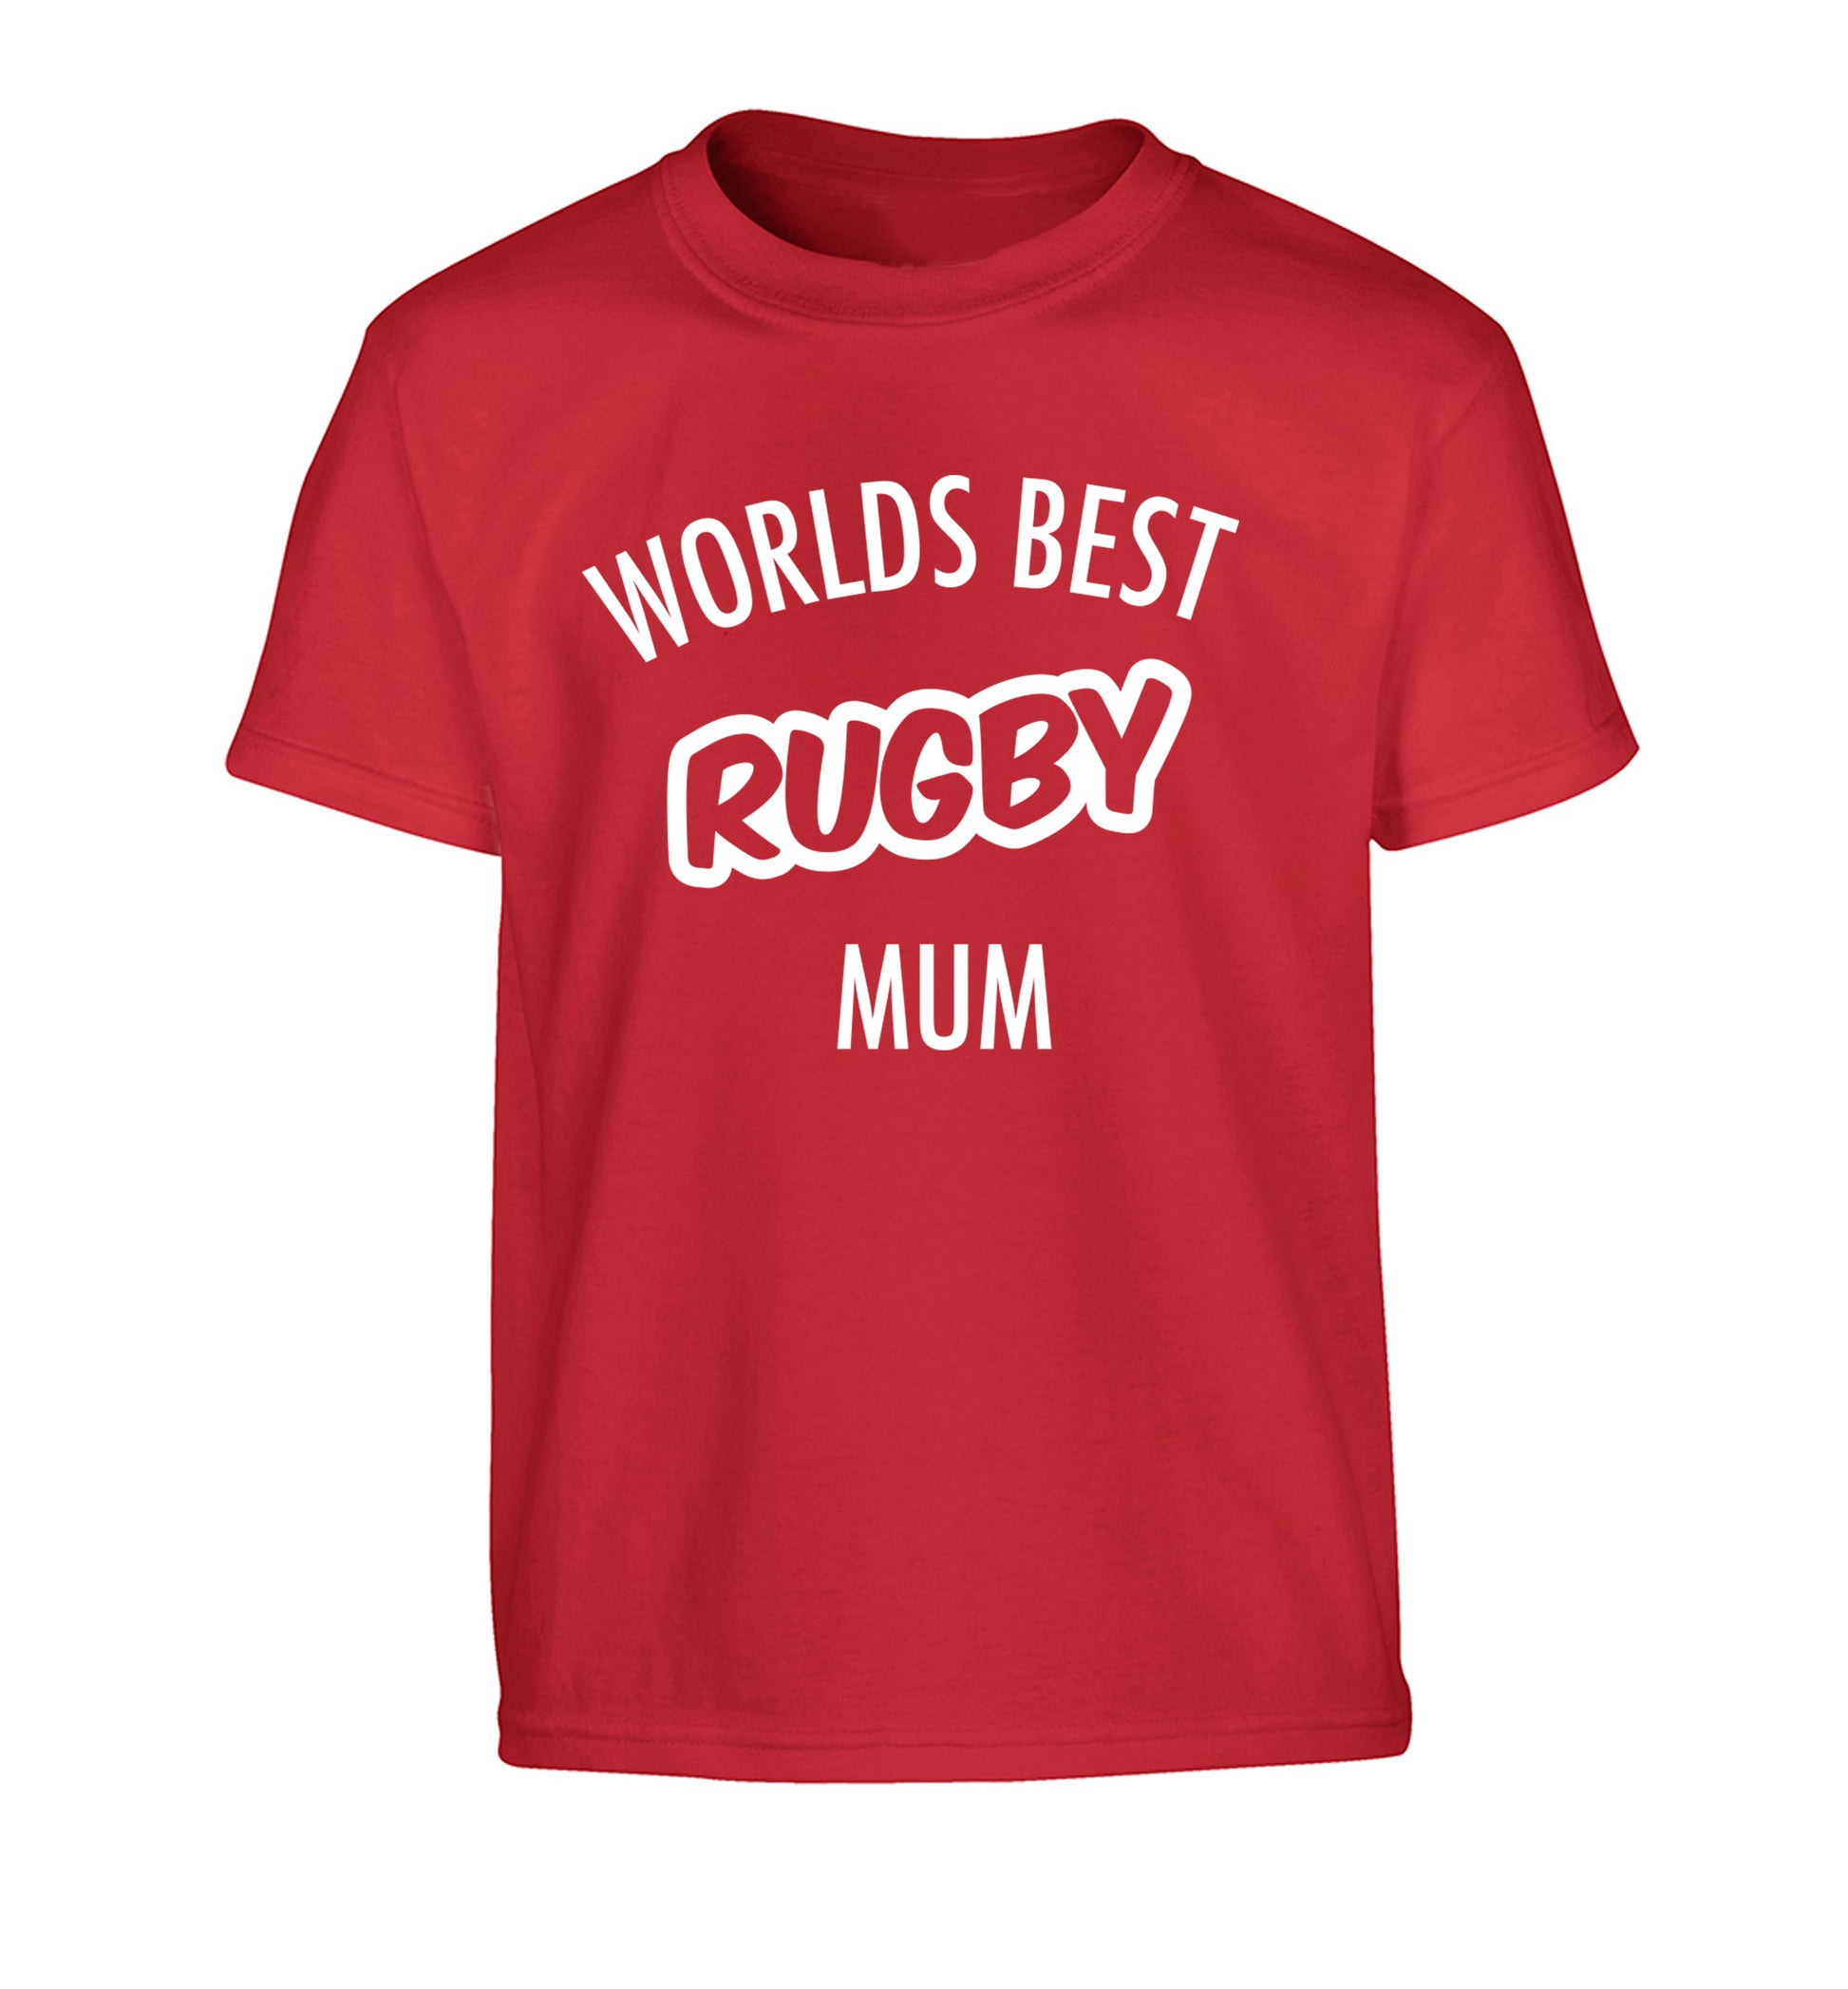 Worlds best rugby mum Children's red Tshirt 12-13 Years